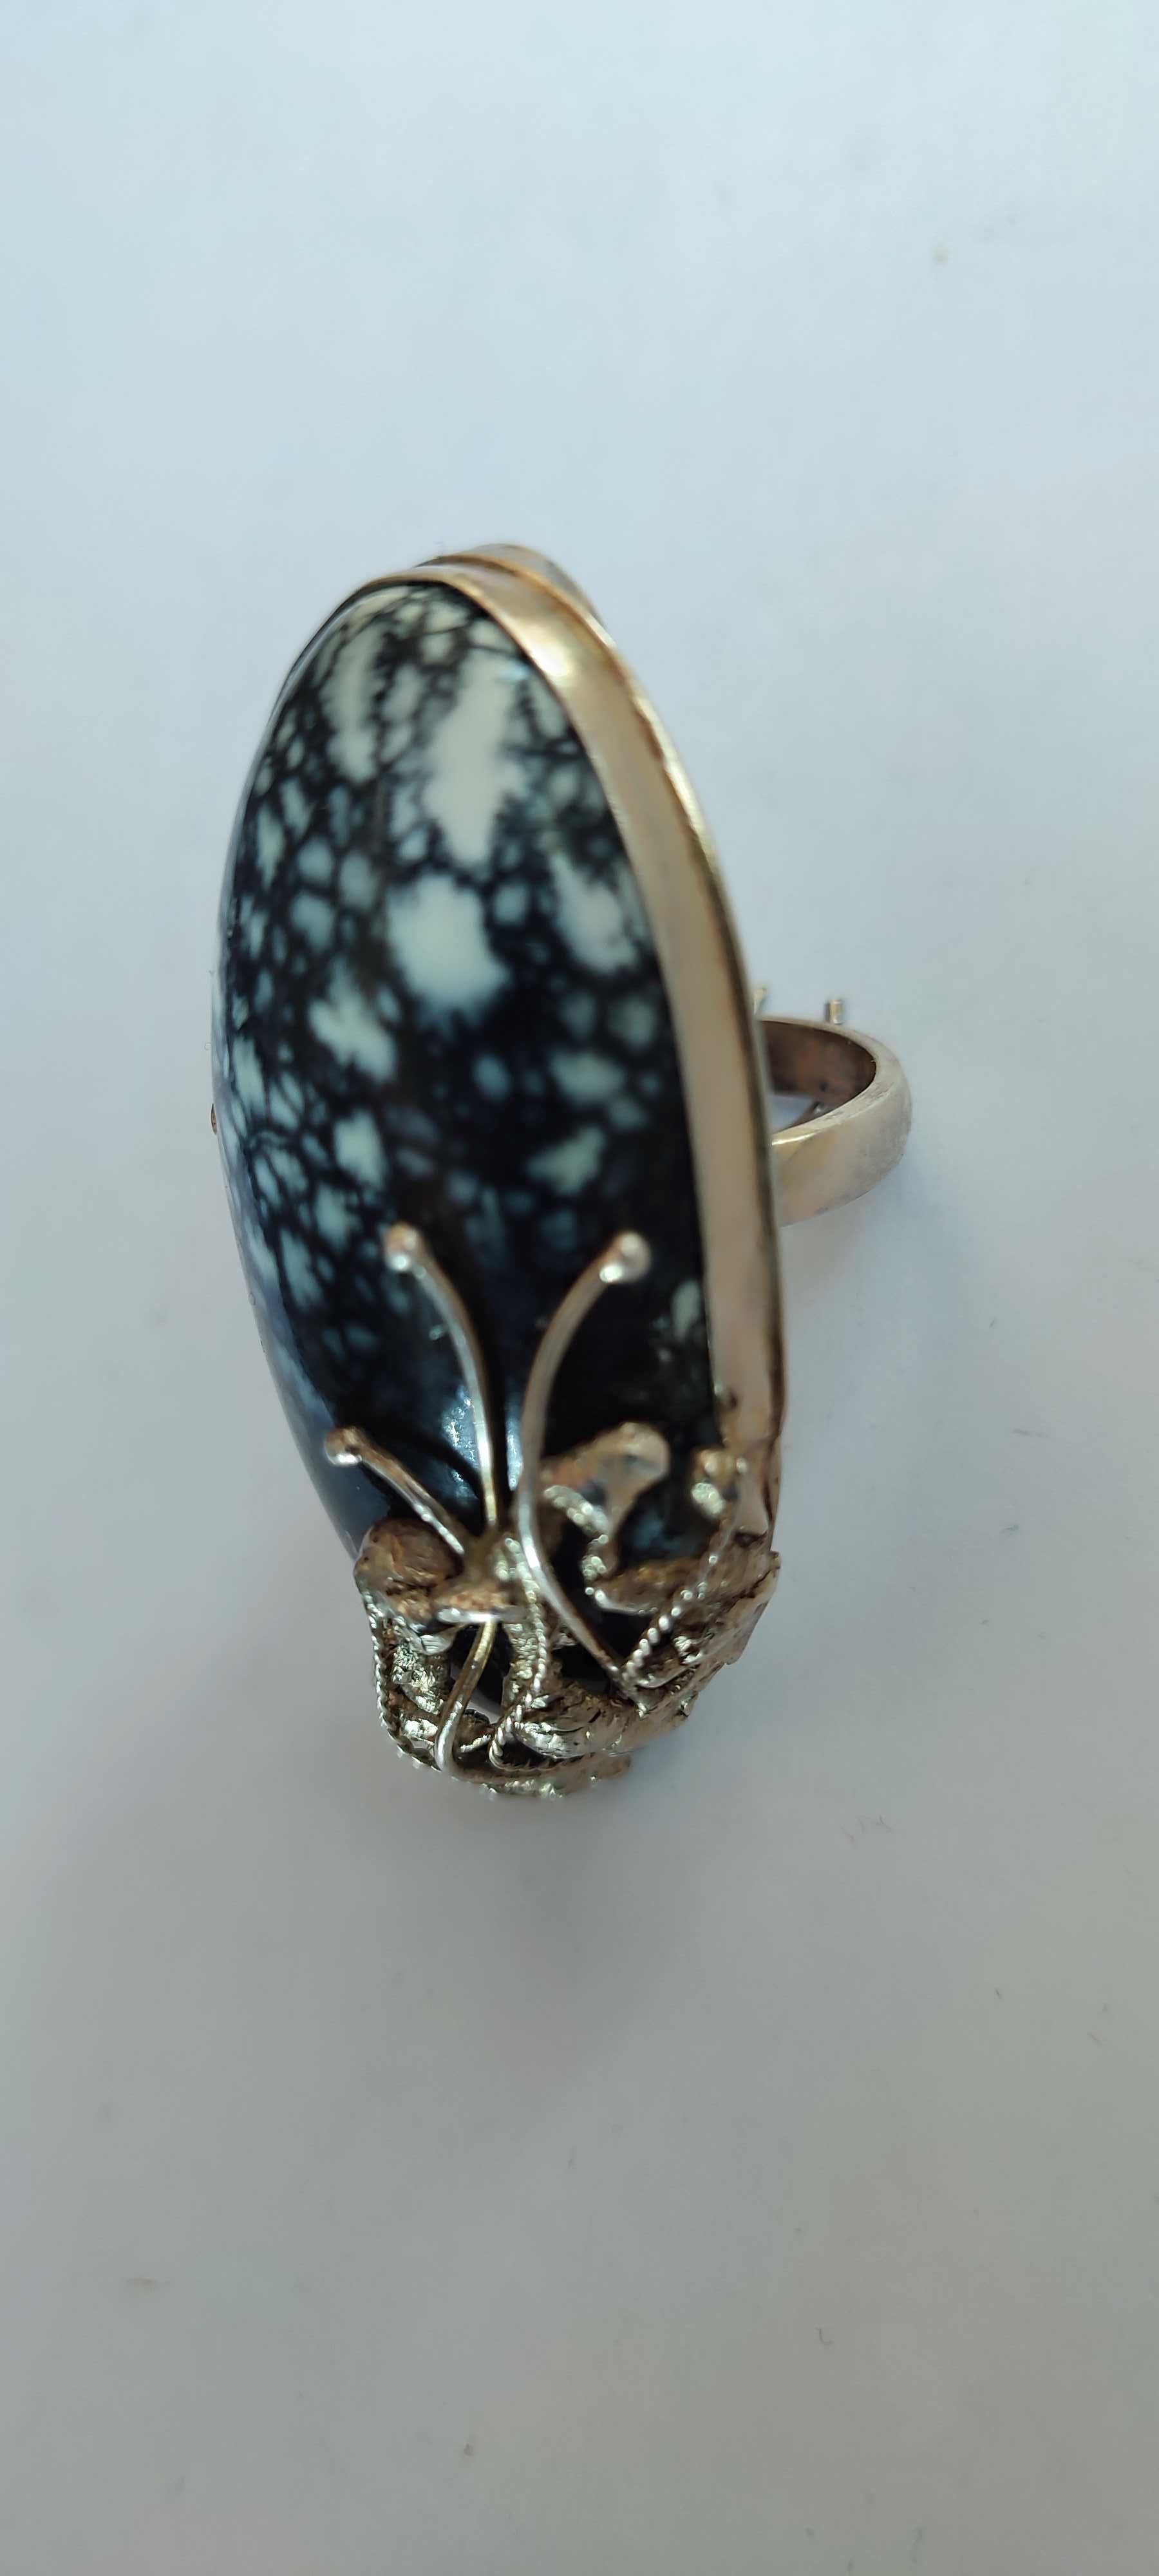 Красивейшее серебряное кольцо с крупным камнем ОПАЛ ЛЕОПАРДОВЫЙ